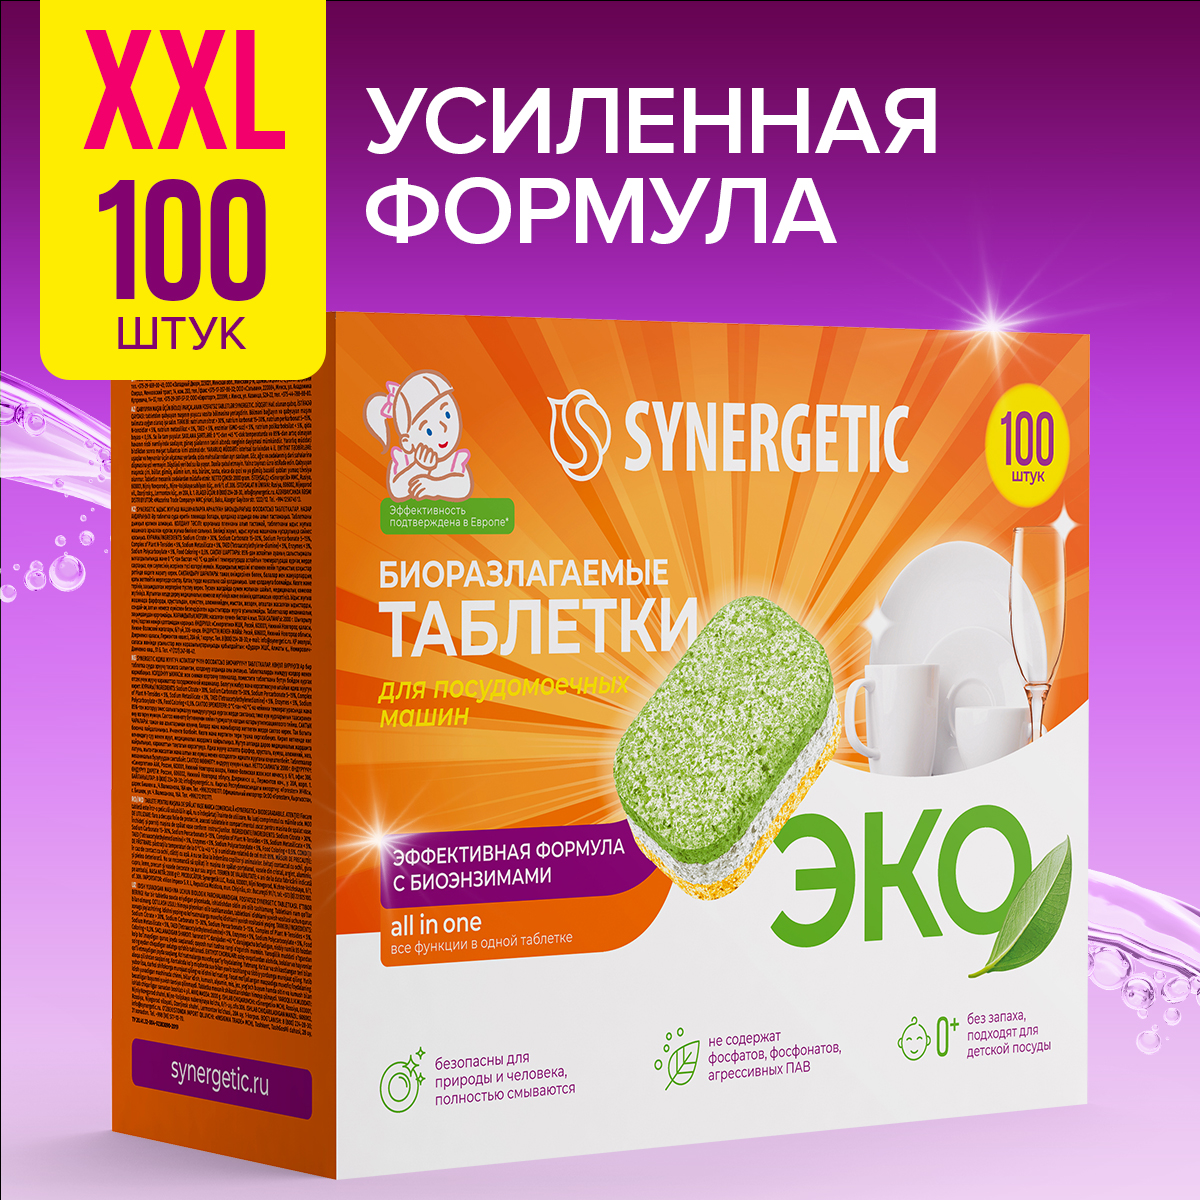 Таблетки для посудомоечных машин Synergetic бесфосфатные, биоразлагаемые, 100 шт. - купить в Мегамаркет Воронеж, цена на Мегамаркет